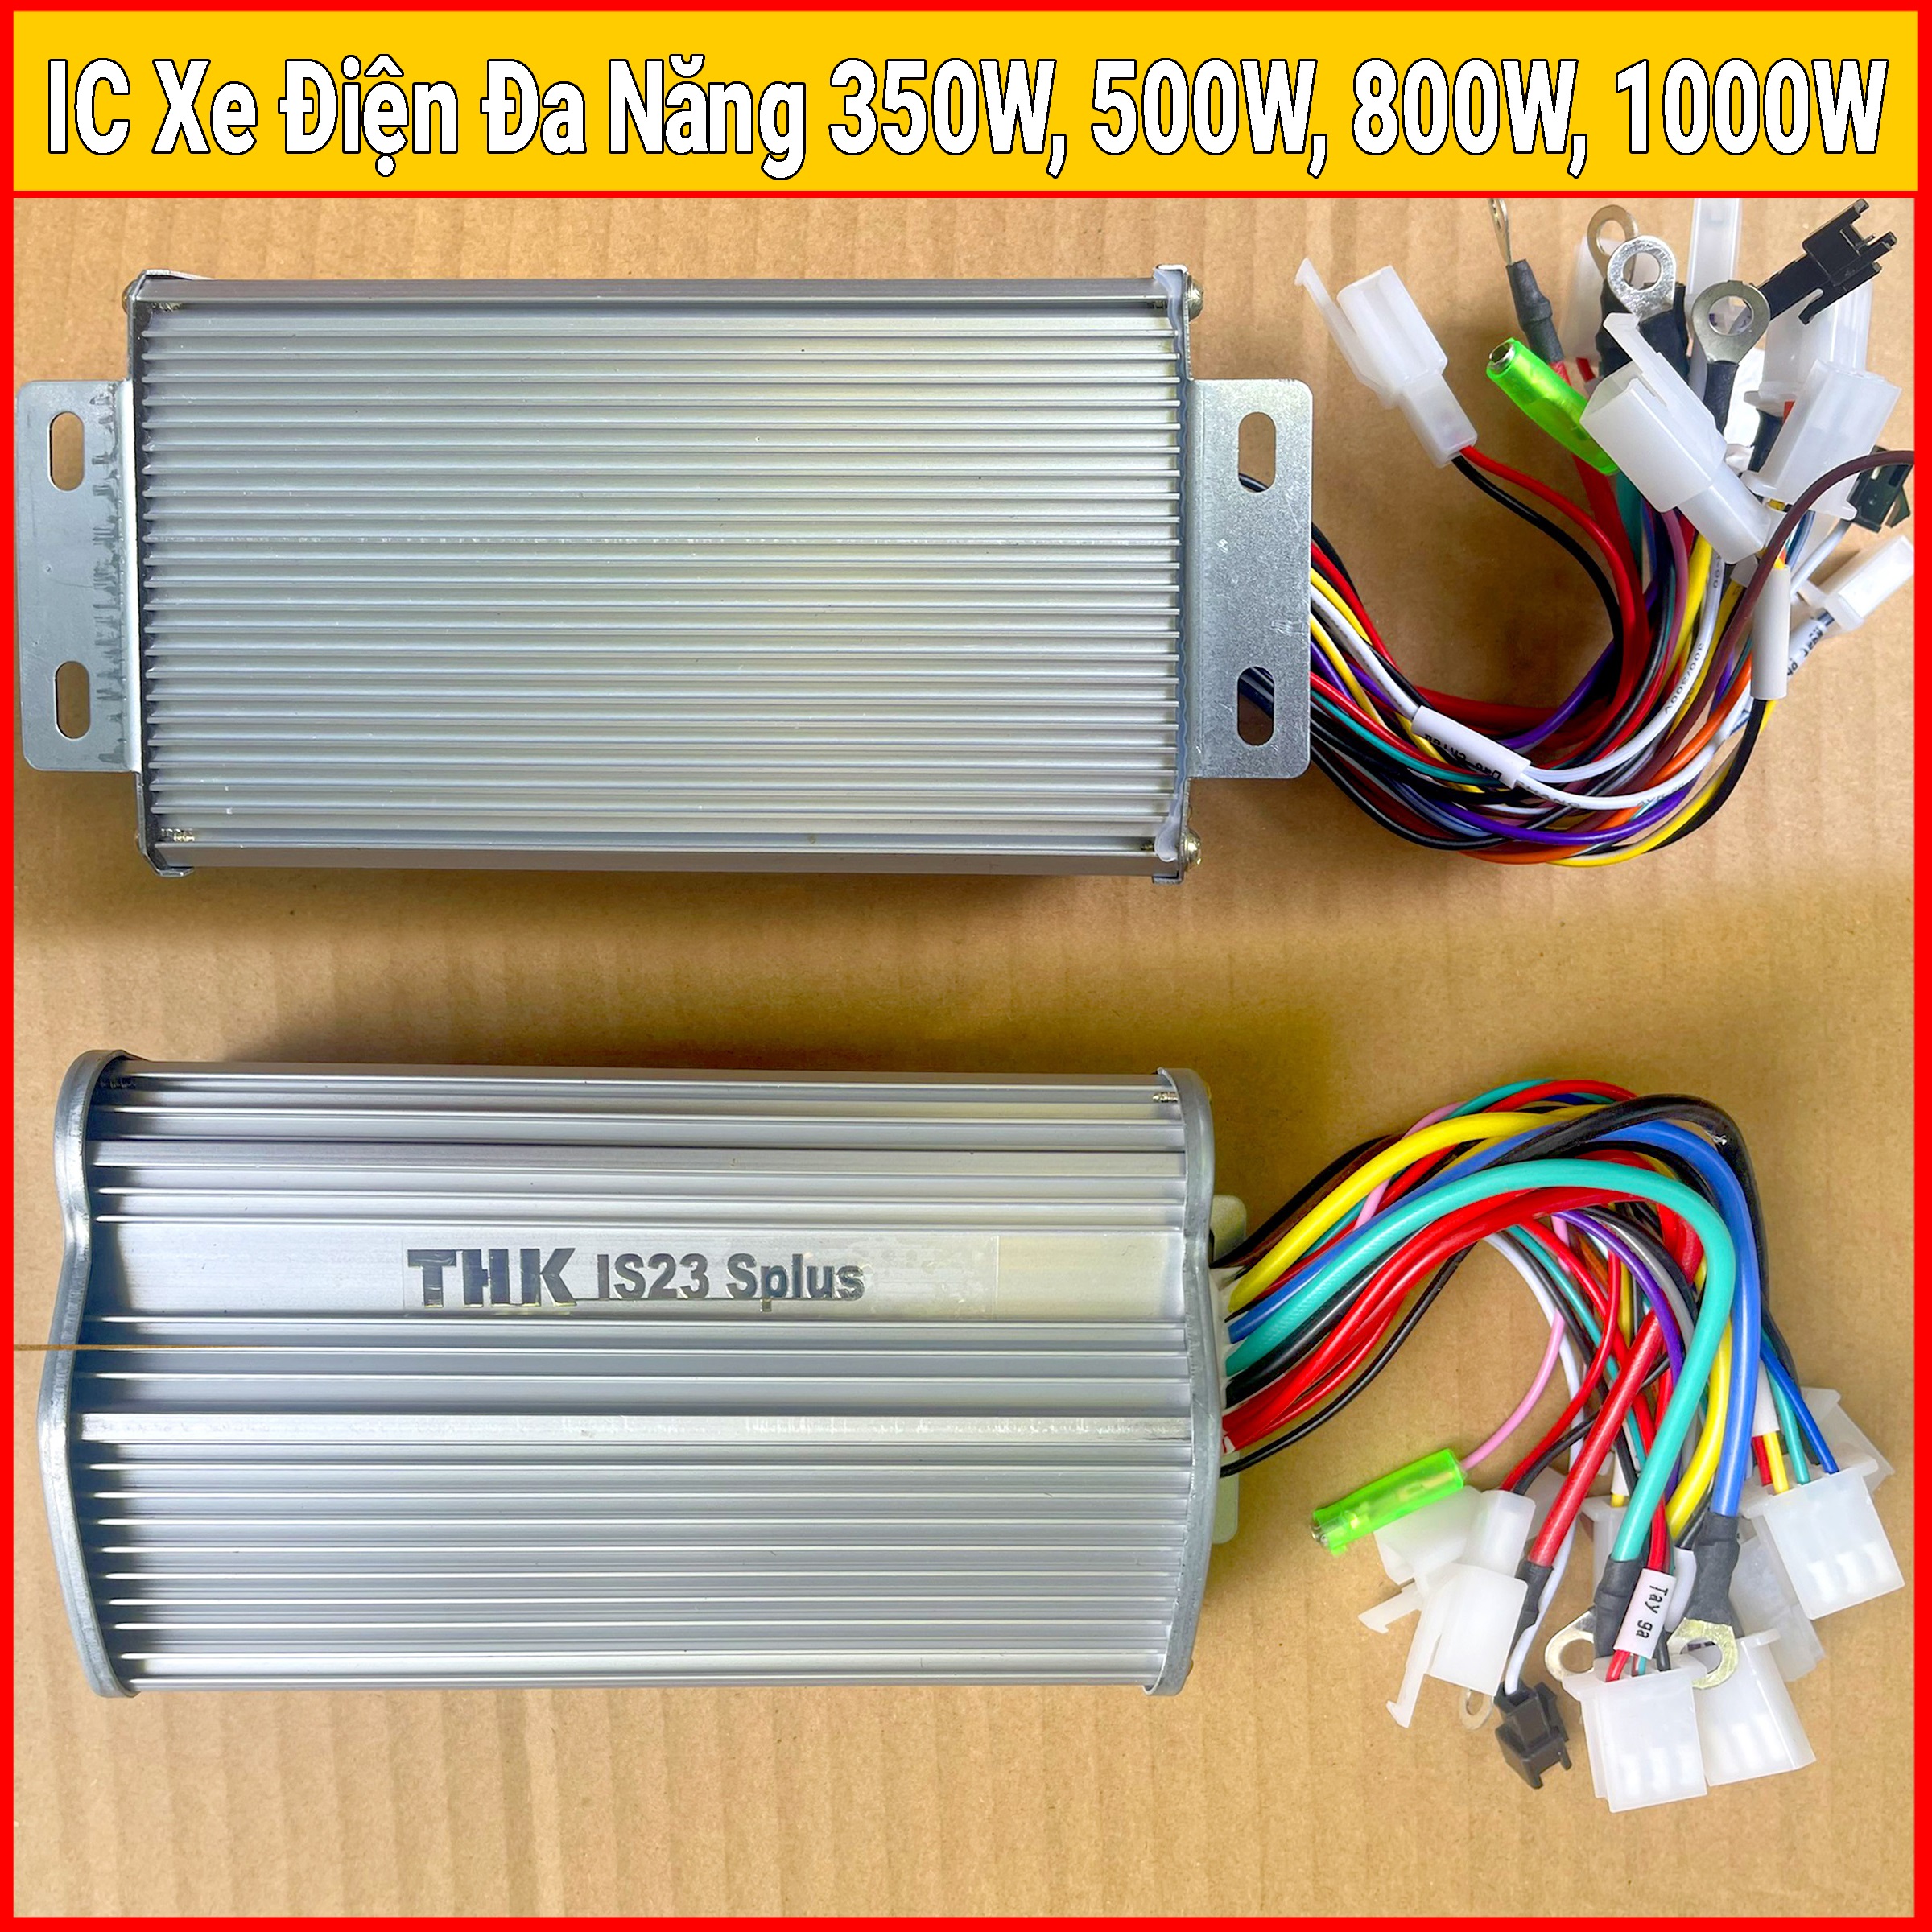 IC điều tốc xe điện 350W 500W 800W 1000W (Dùng cho các dòng xe điện chạy tải 36v - 48v - 60v) BH 12 tháng